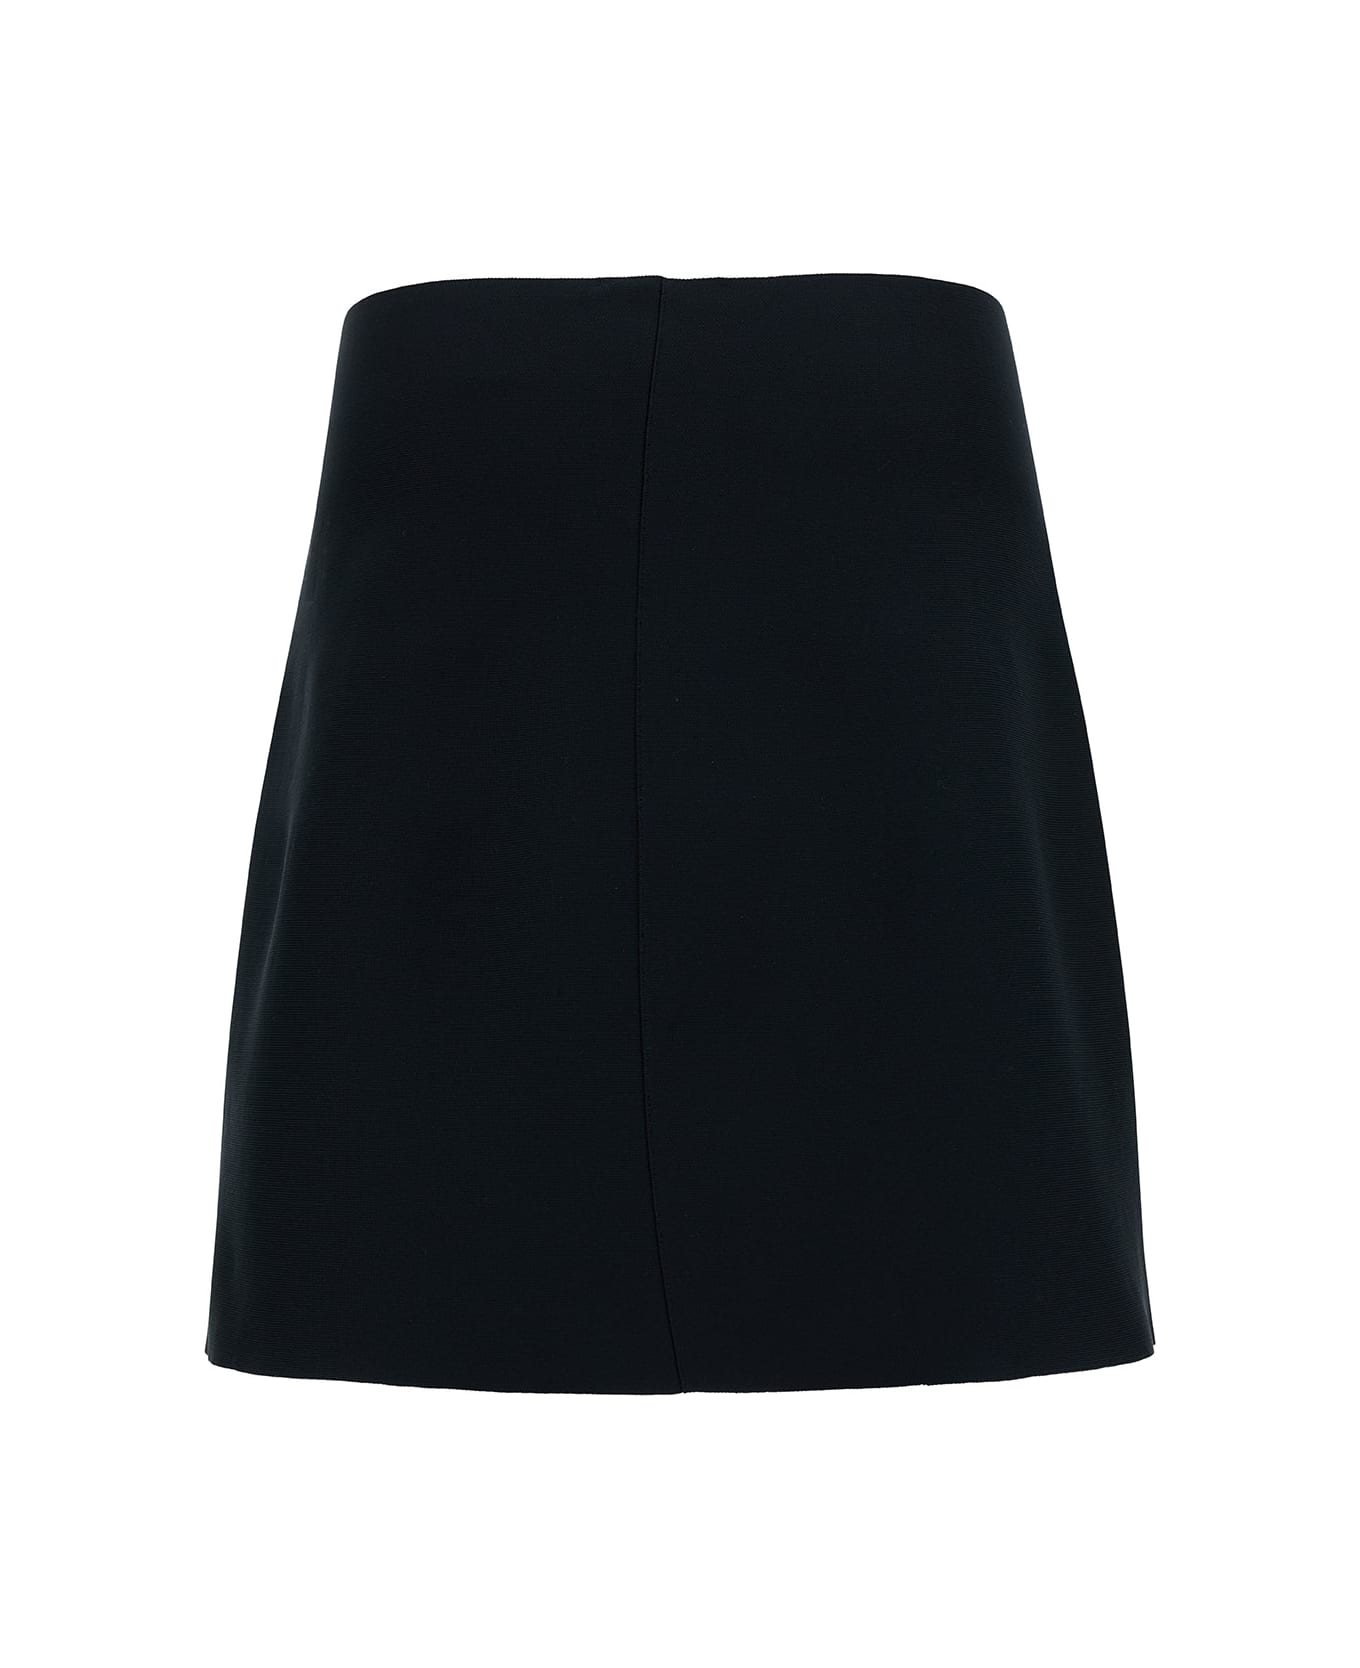 Jil Sander Mini Black Skirt With Regular Waist In Stretch Fabric Woman - Black スカート